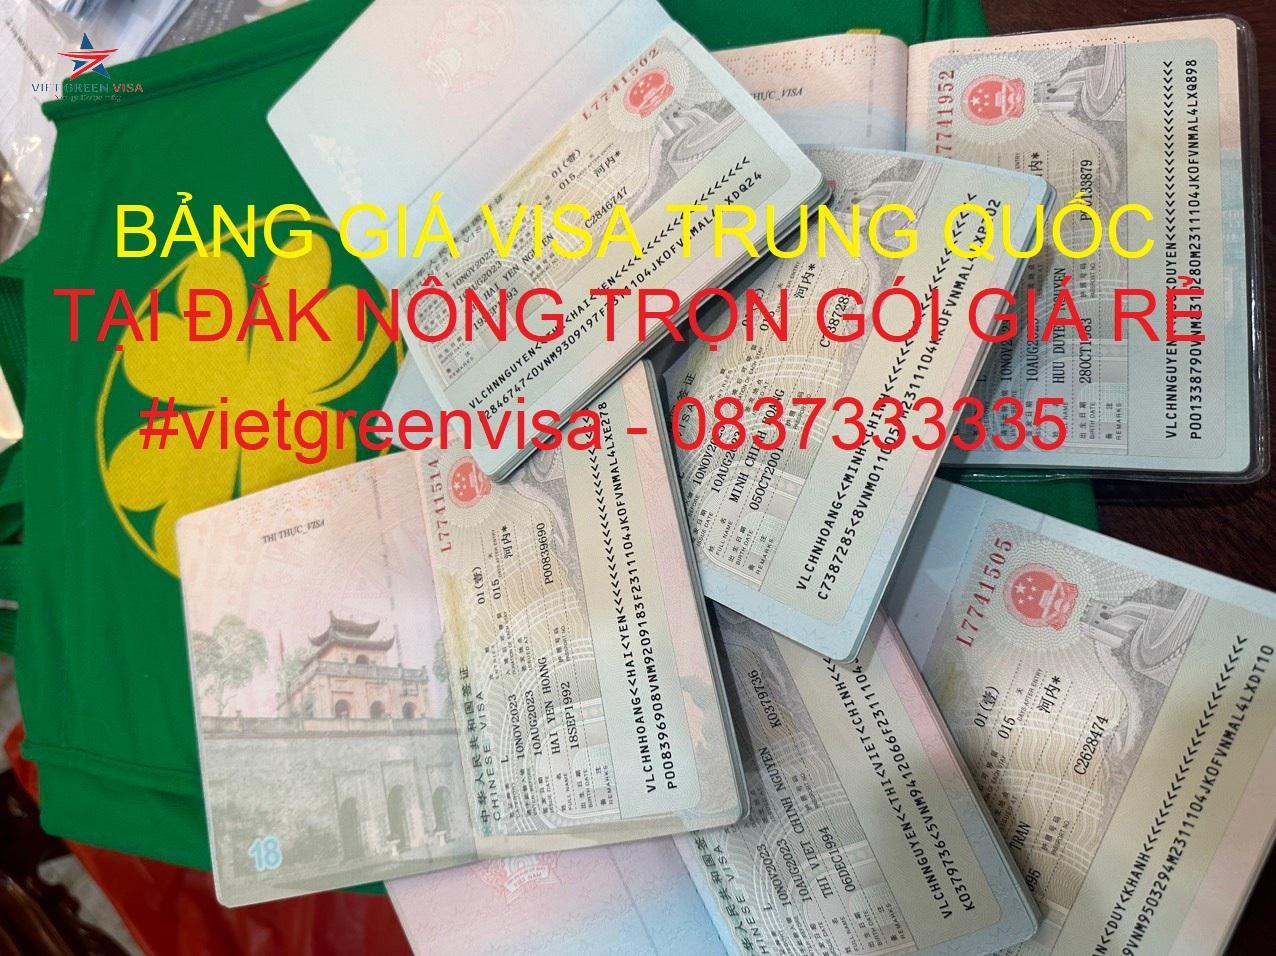 Dịch vụ xin visa Trung Quốc tại Đắk Nông nhanh nhất